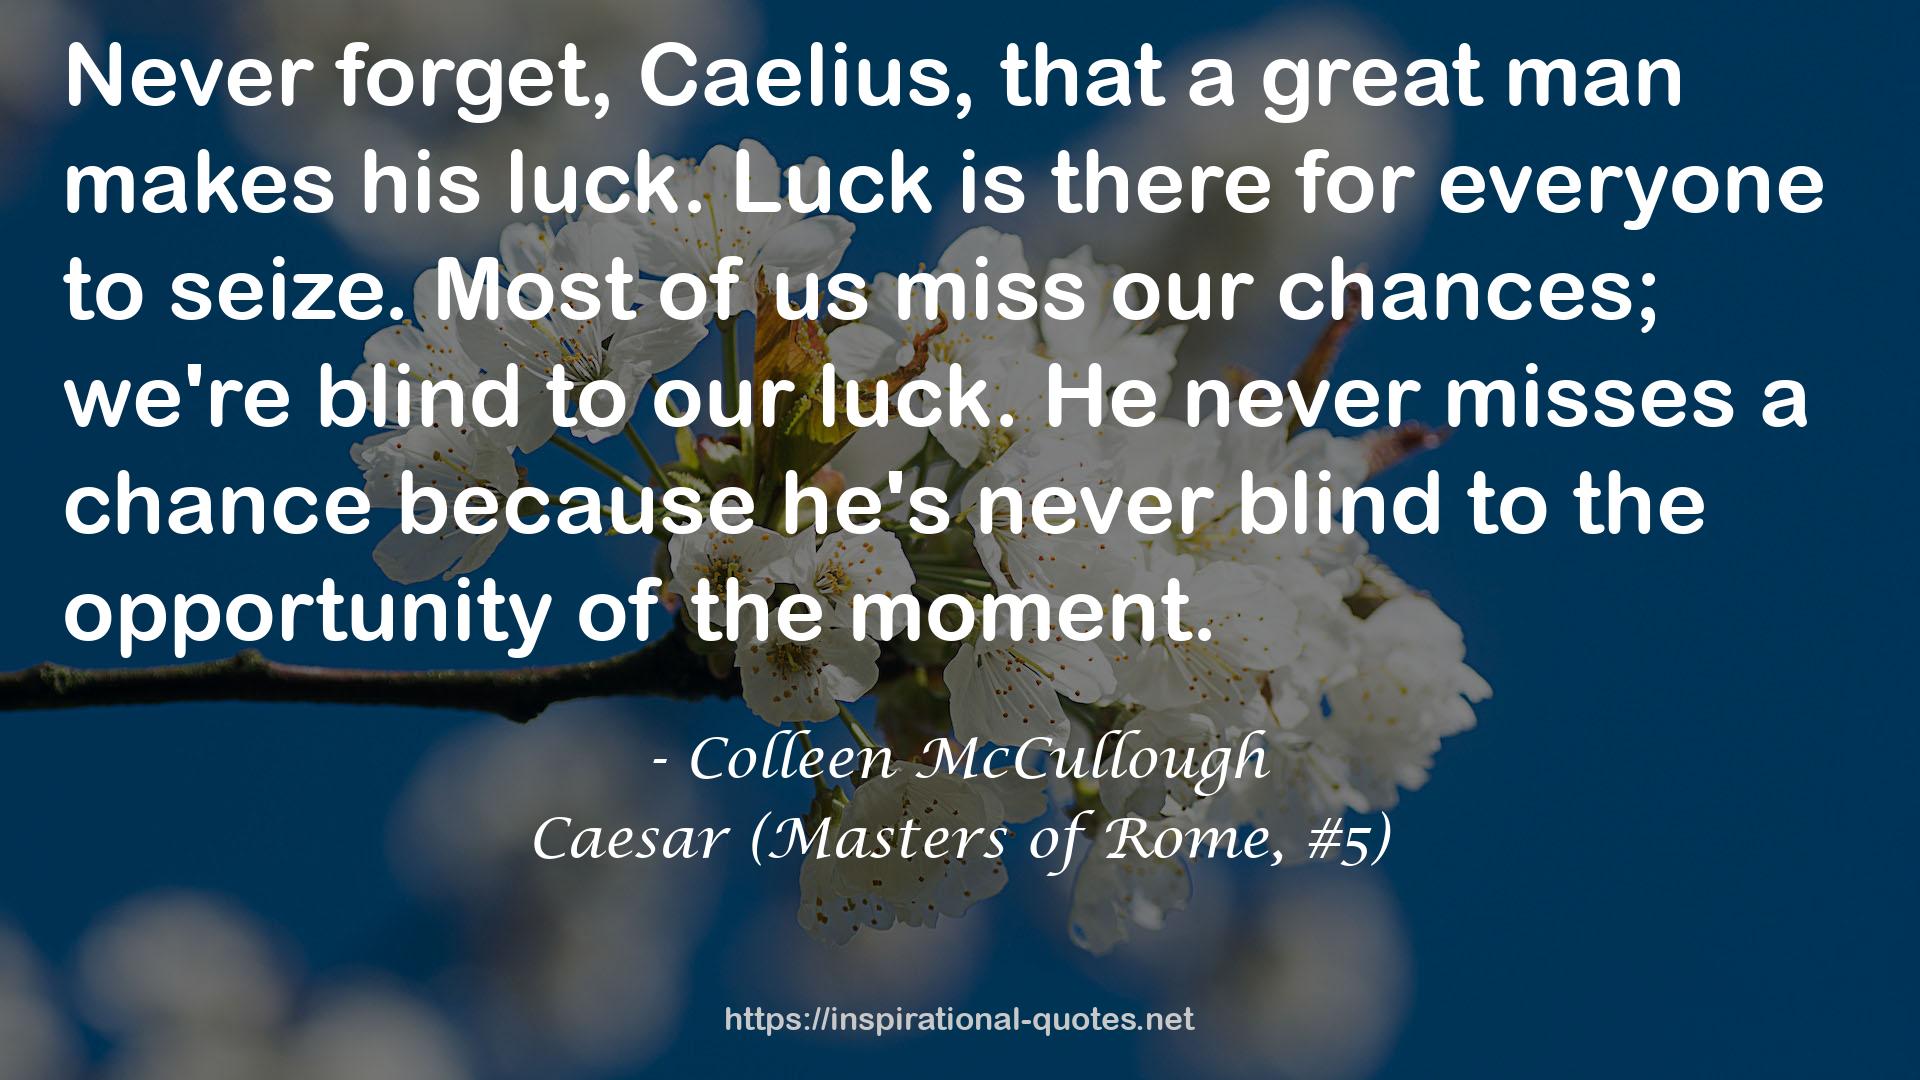 Caesar (Masters of Rome, #5) QUOTES